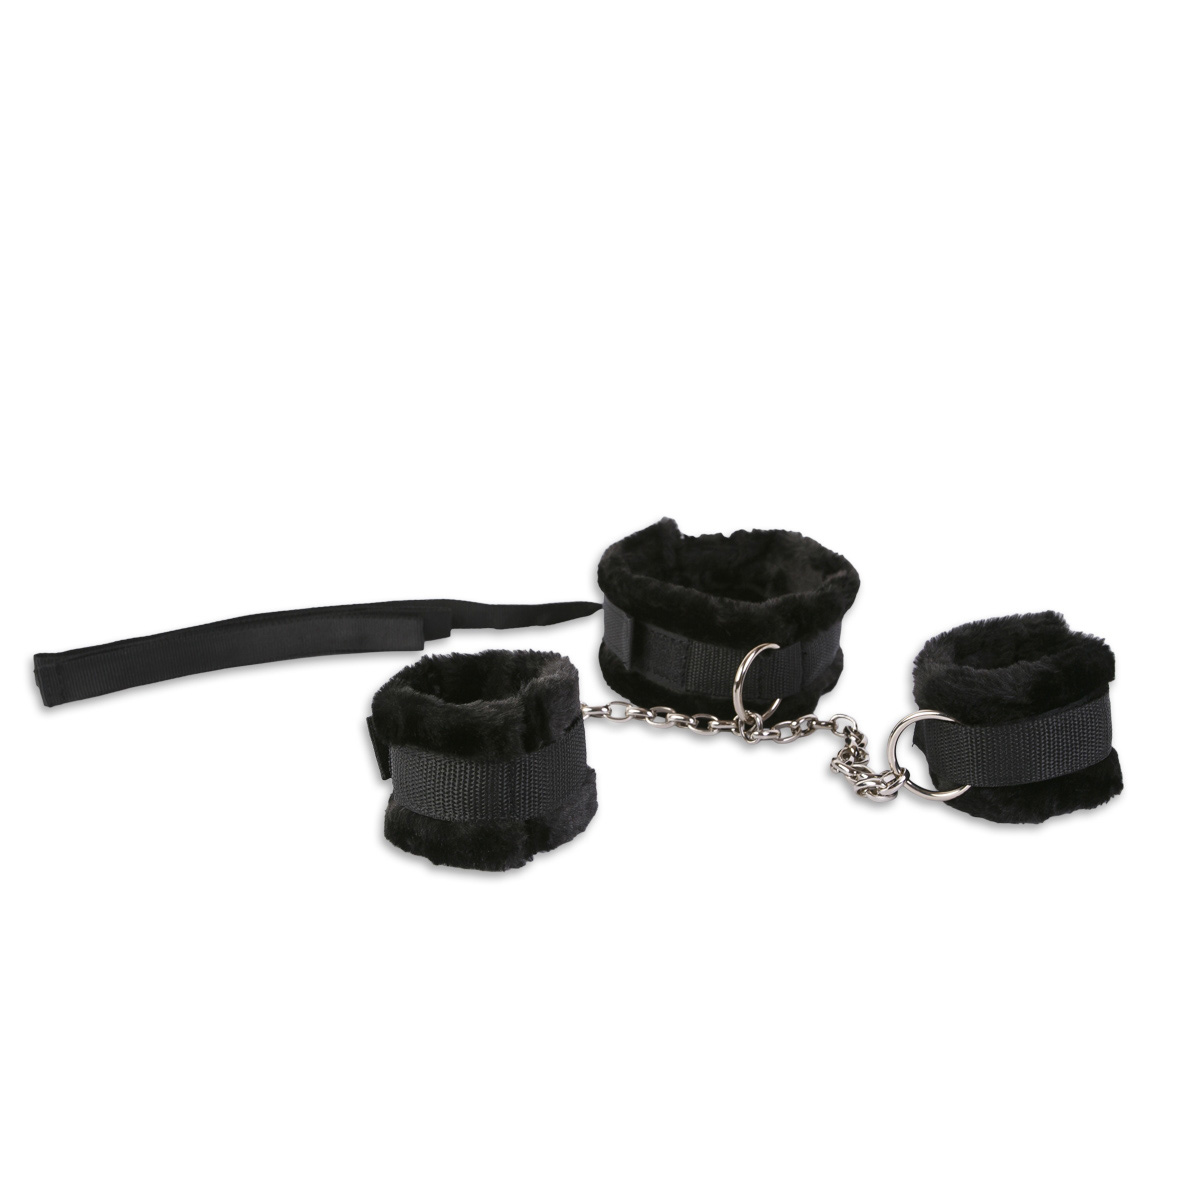 Комплект для бондажа: ошейник и наручники, черные 